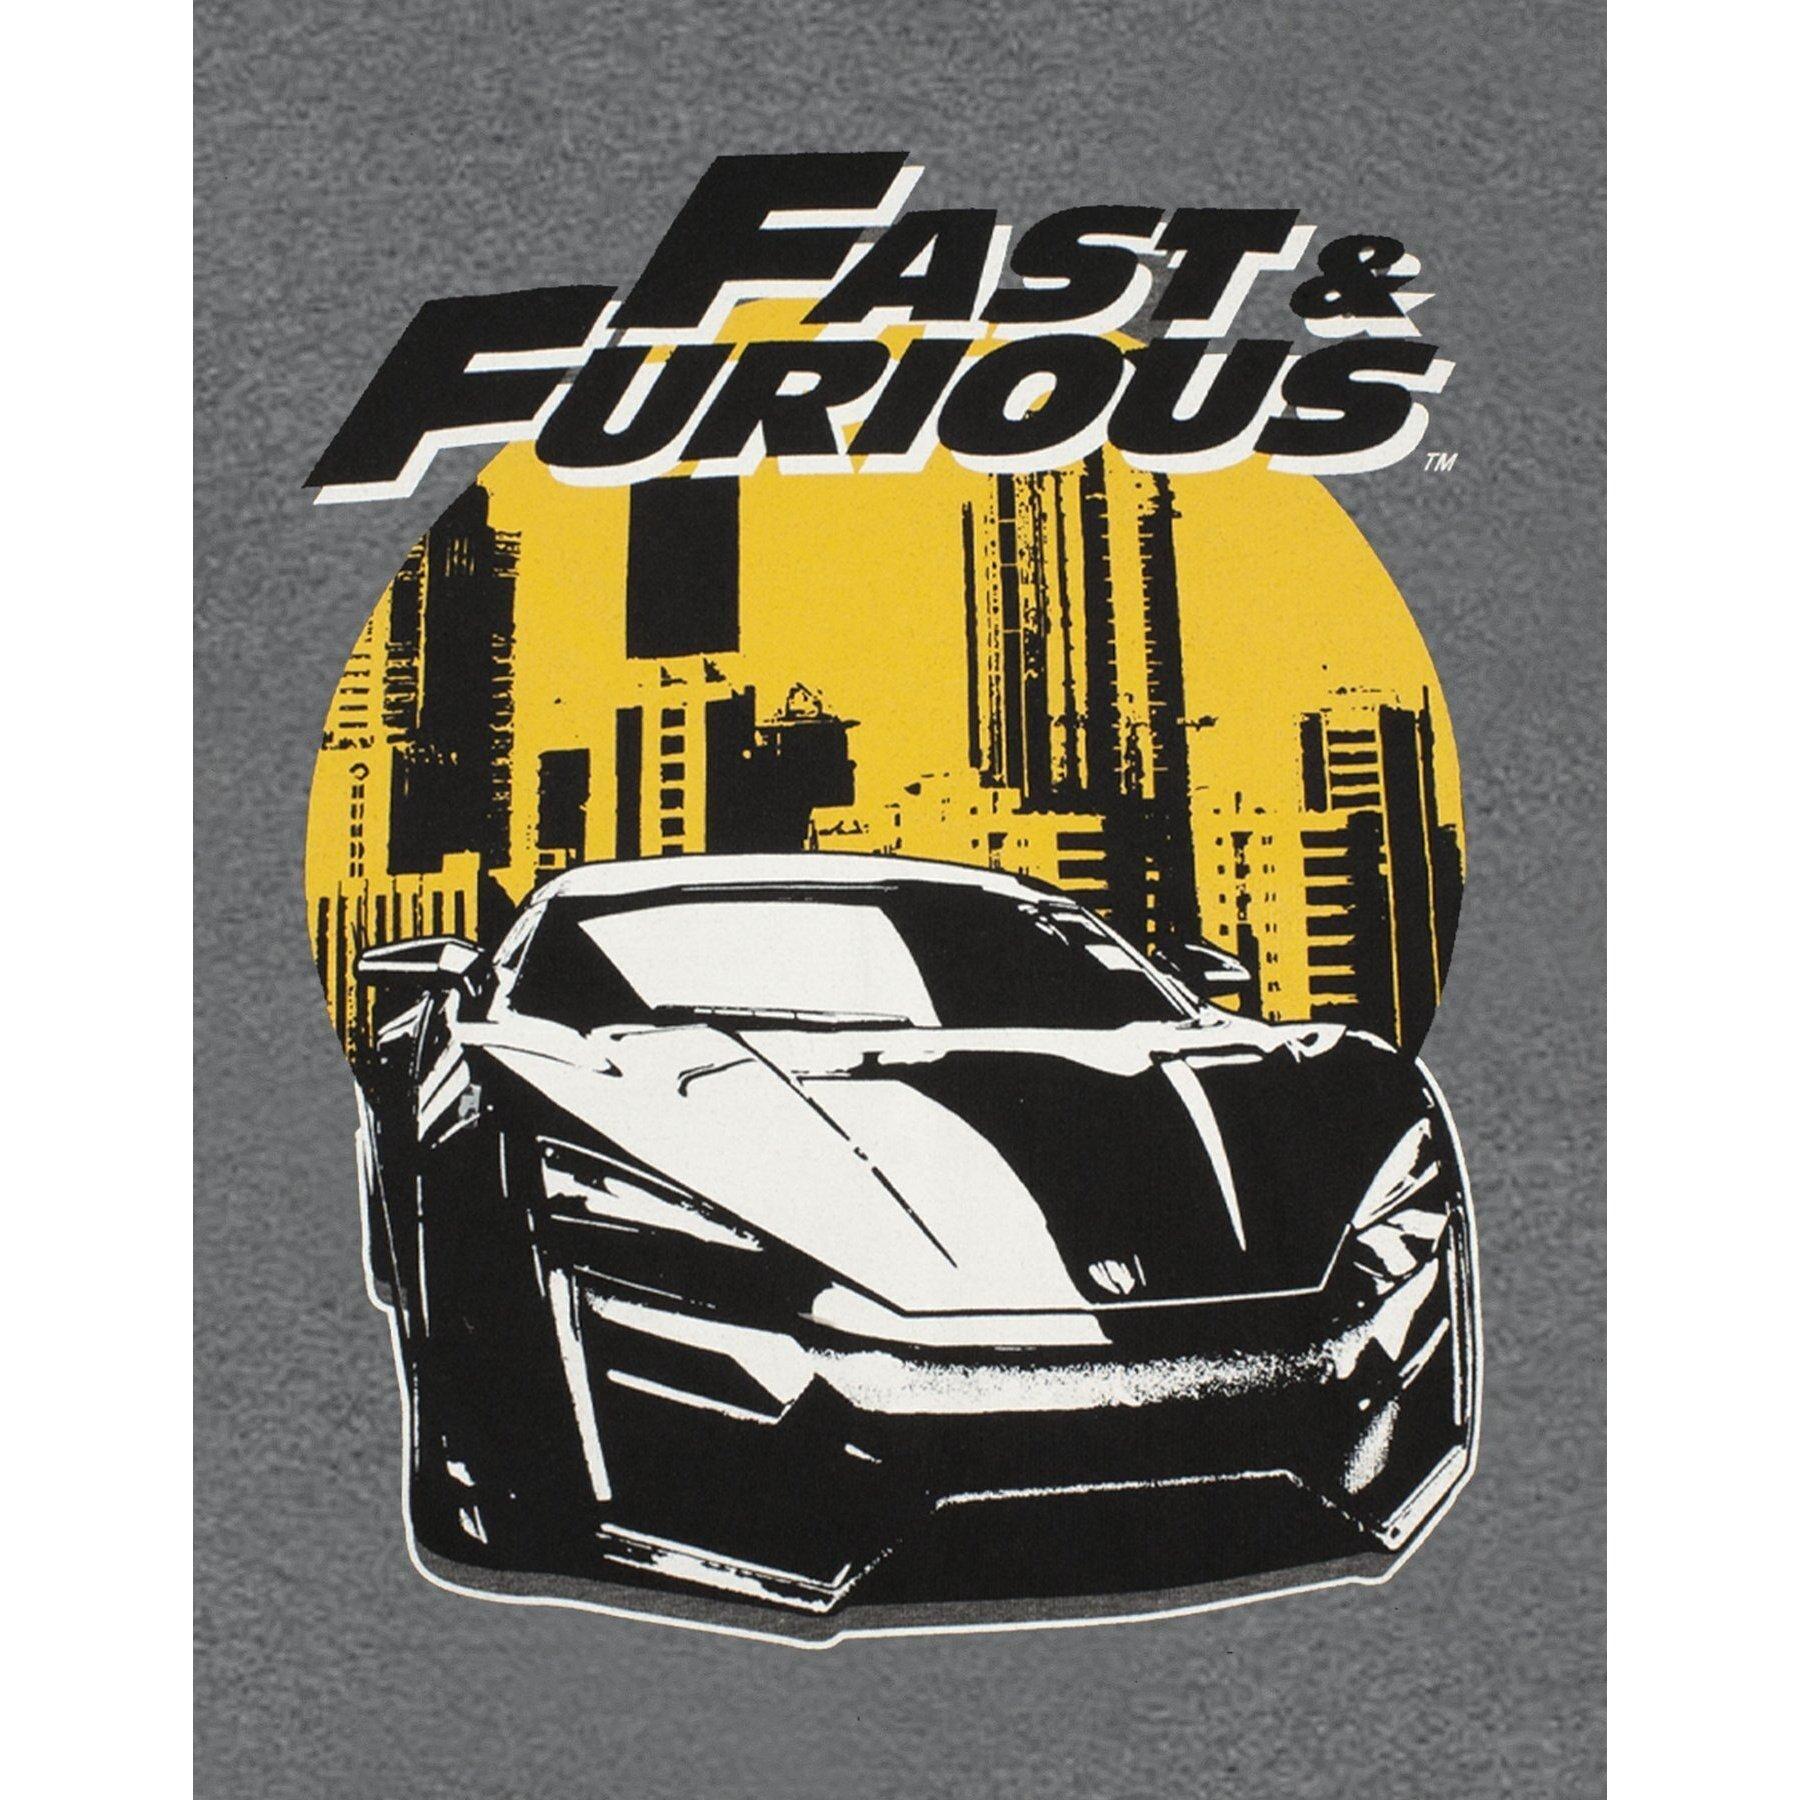 Fast & Furious  TShirt 